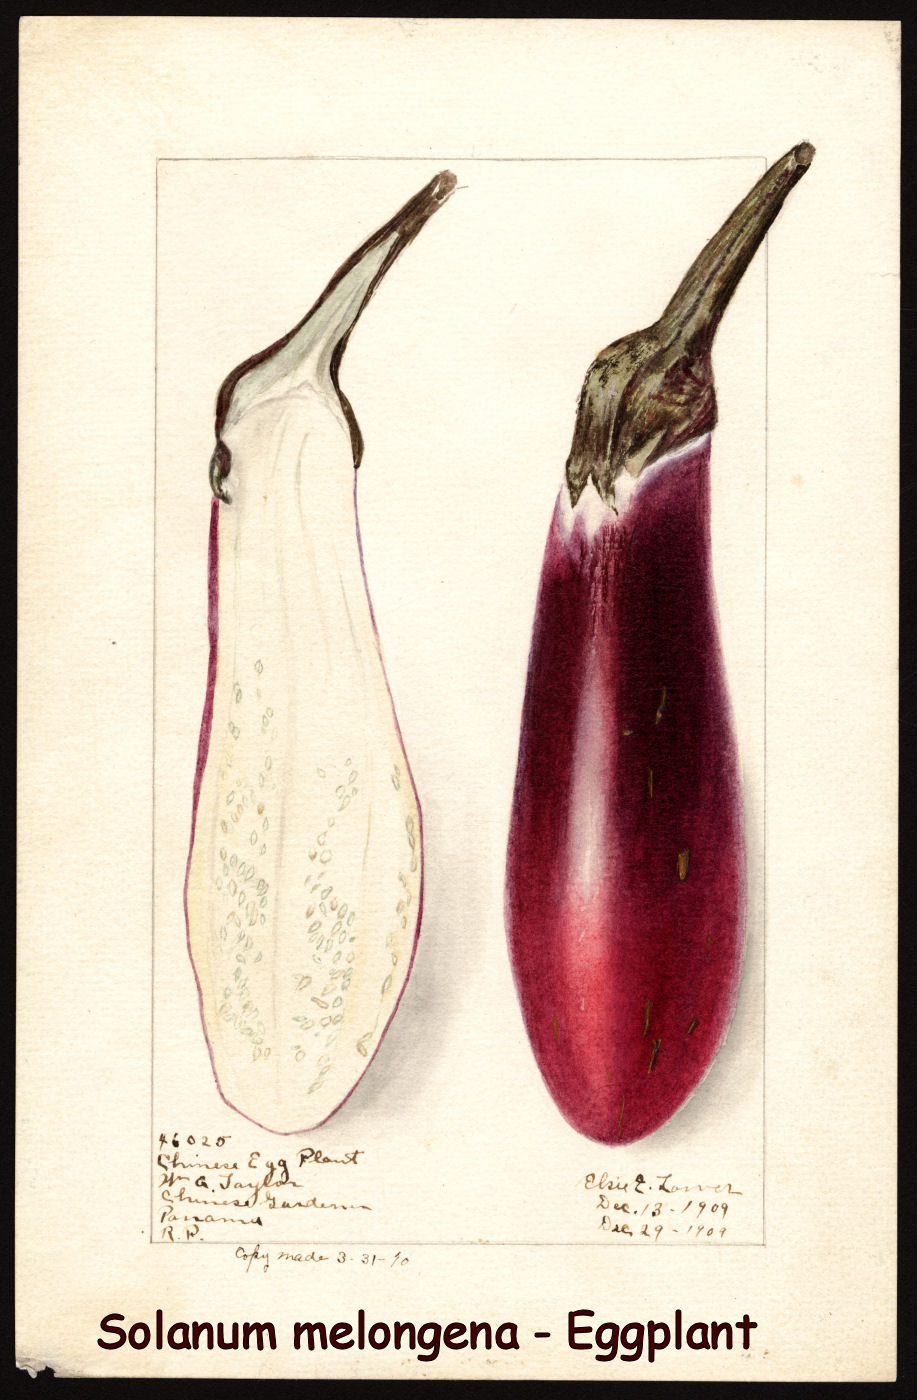 Solanum melongena - Eggplant